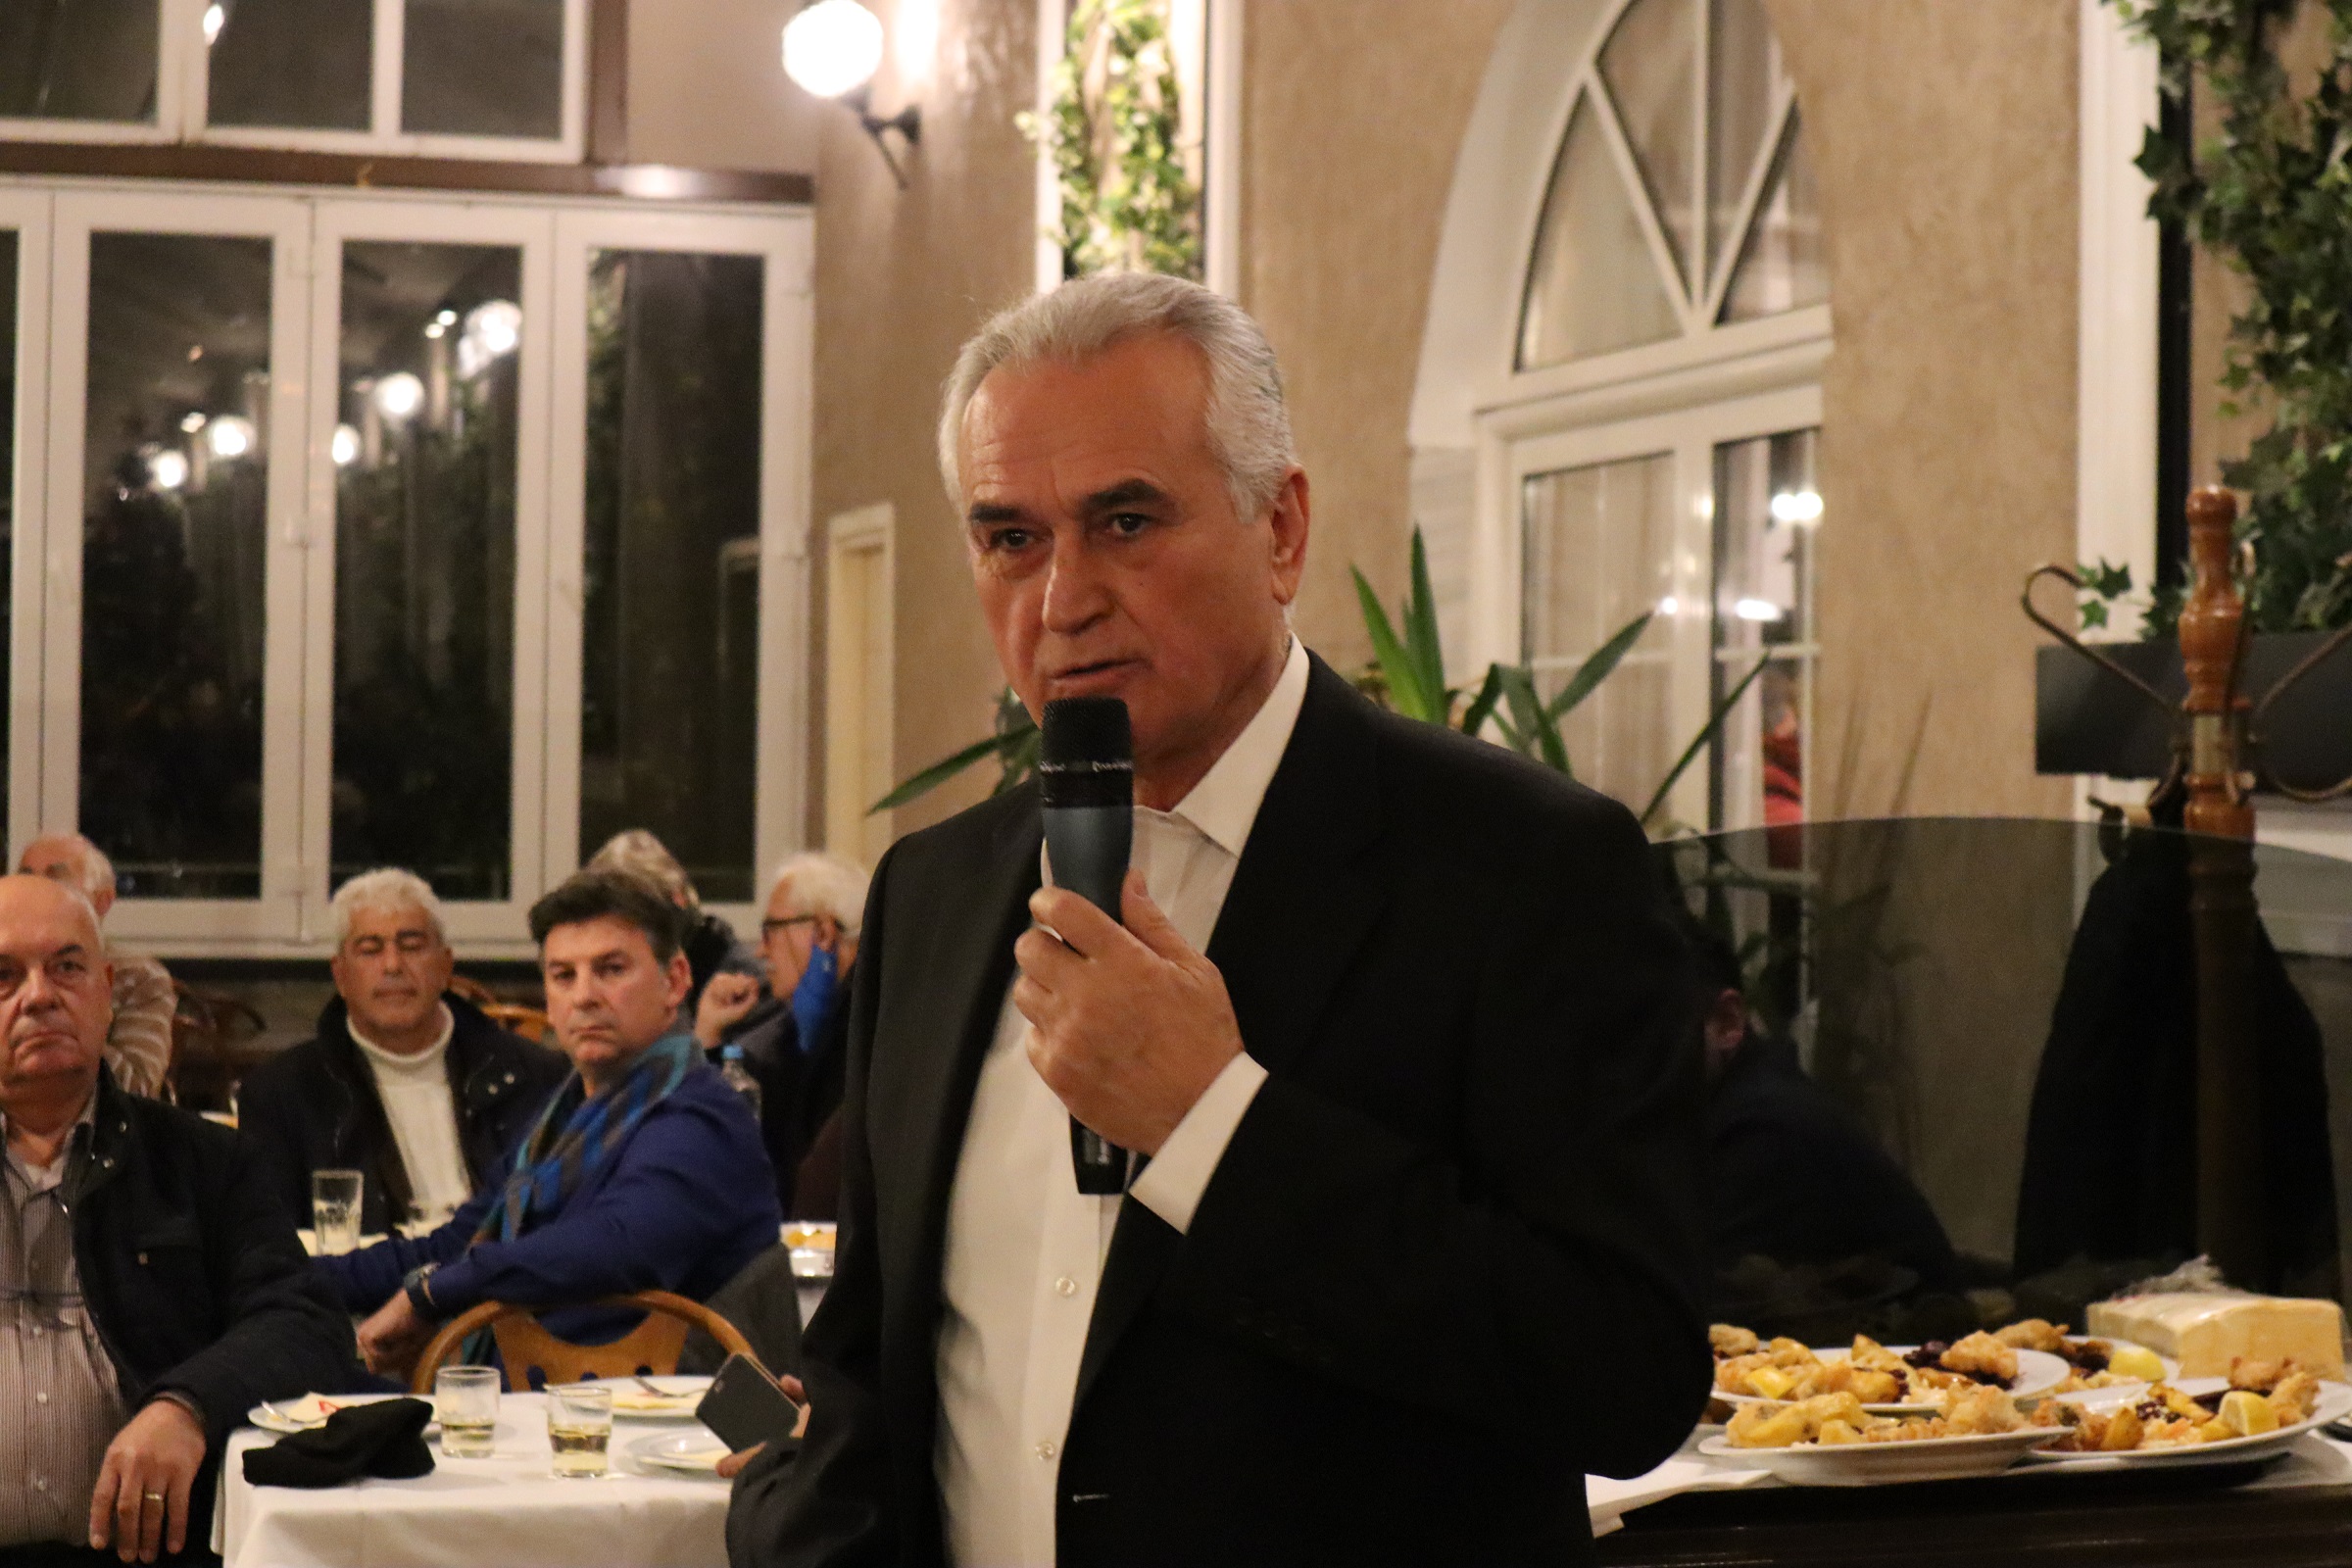 Σάββας Αναστασιάδης: “Η χώρα χρειάζεται ισχυρή κυβέρνηση”